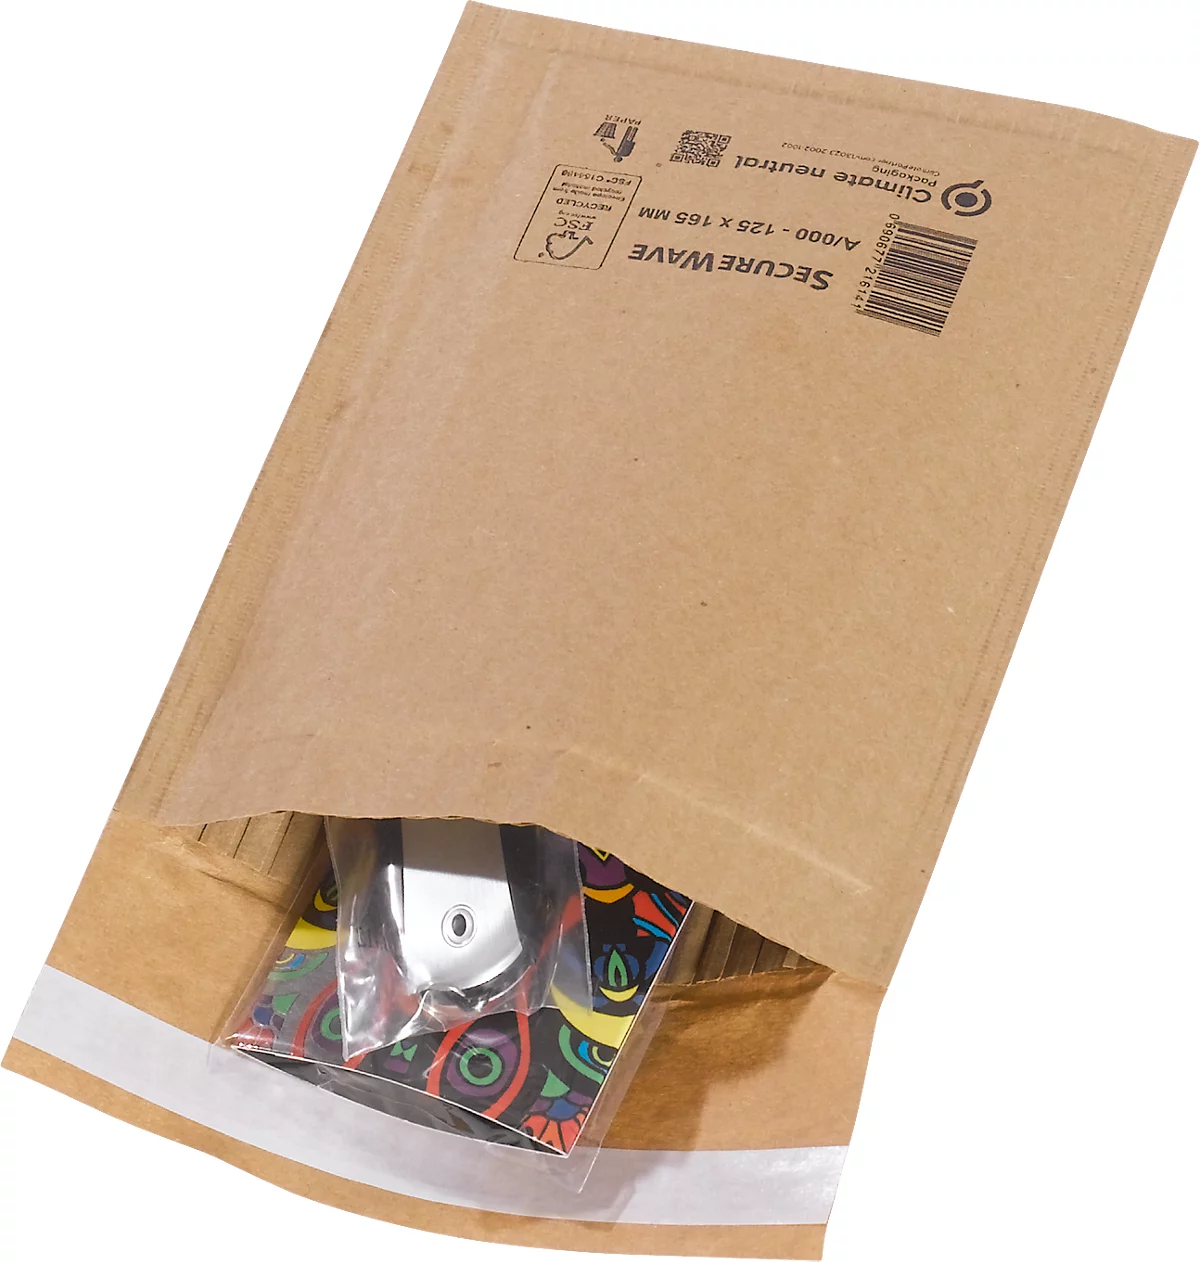 Sobres reciclados MD SecureWave Securepack, forrados de papel, adhesivo sensible a la presión, neutros desde el punto de vista climático, papel 100% reciclado FSC, tamaño A/0, 125 x 170 mm, 150 unidades